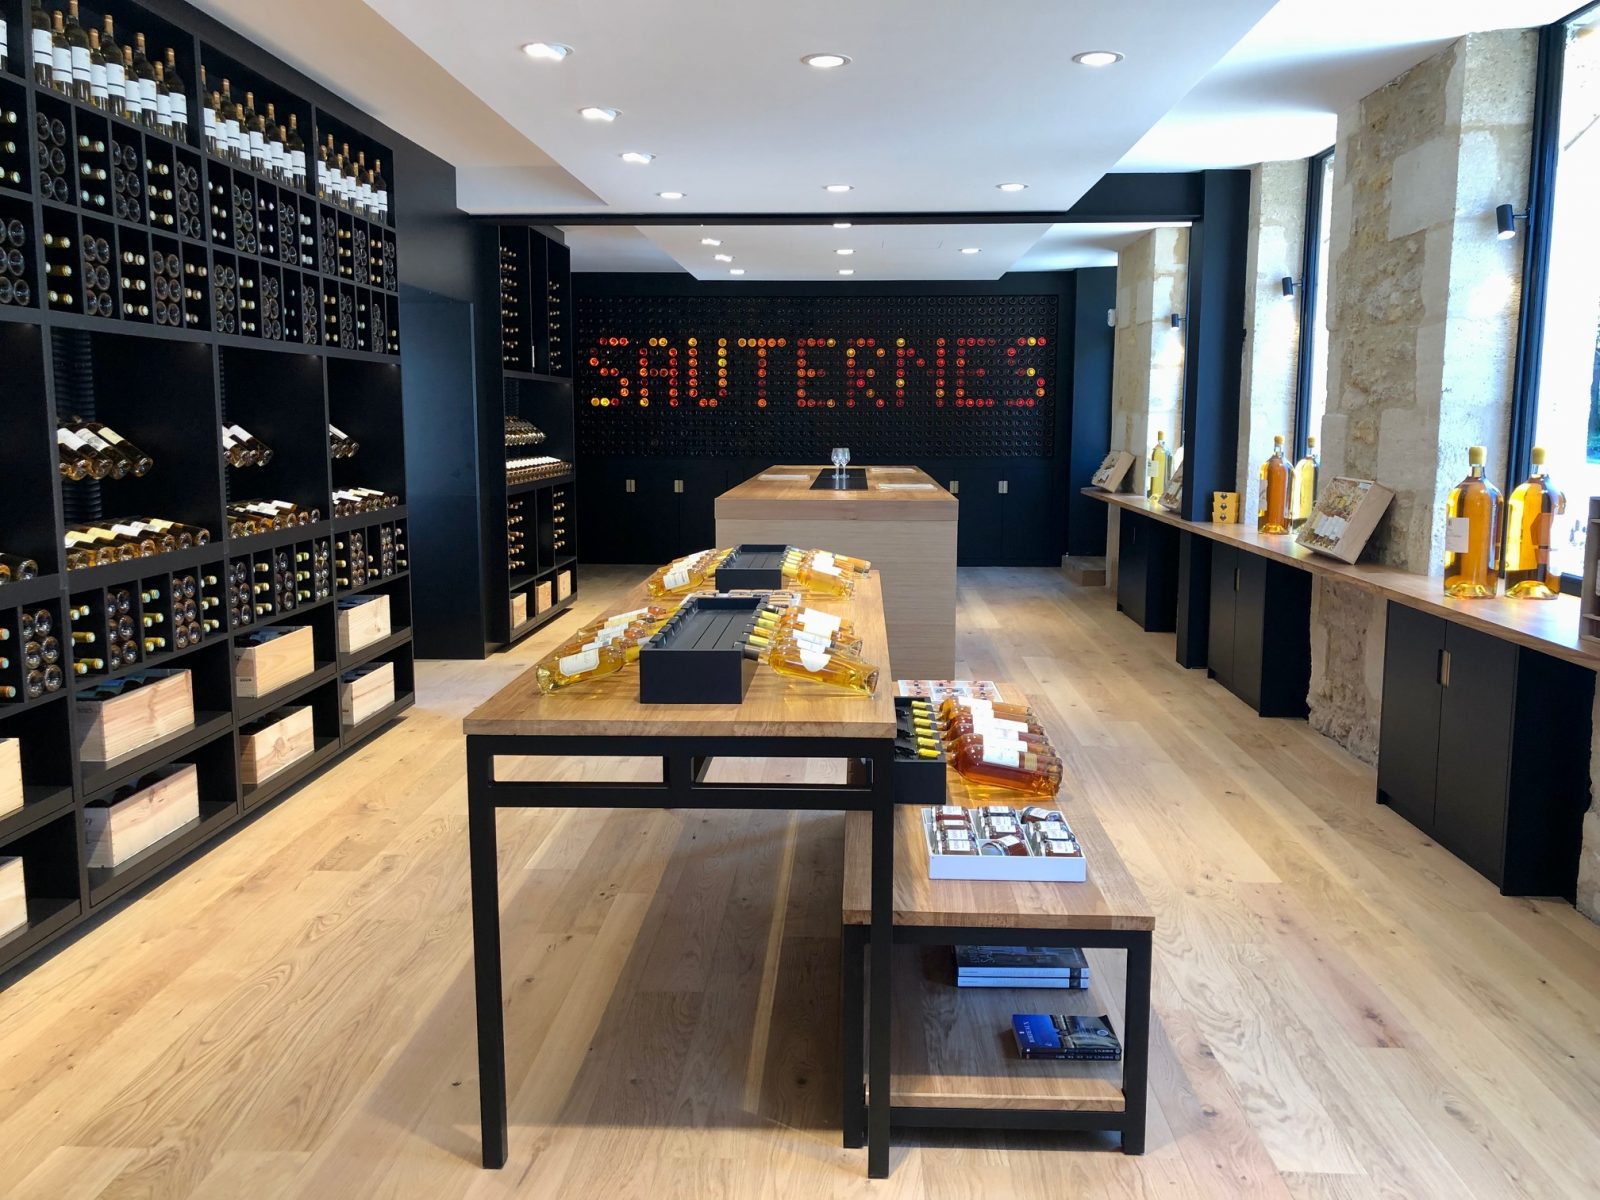 Haus von Sauternes – SAUTERNES – Süd-Gironde